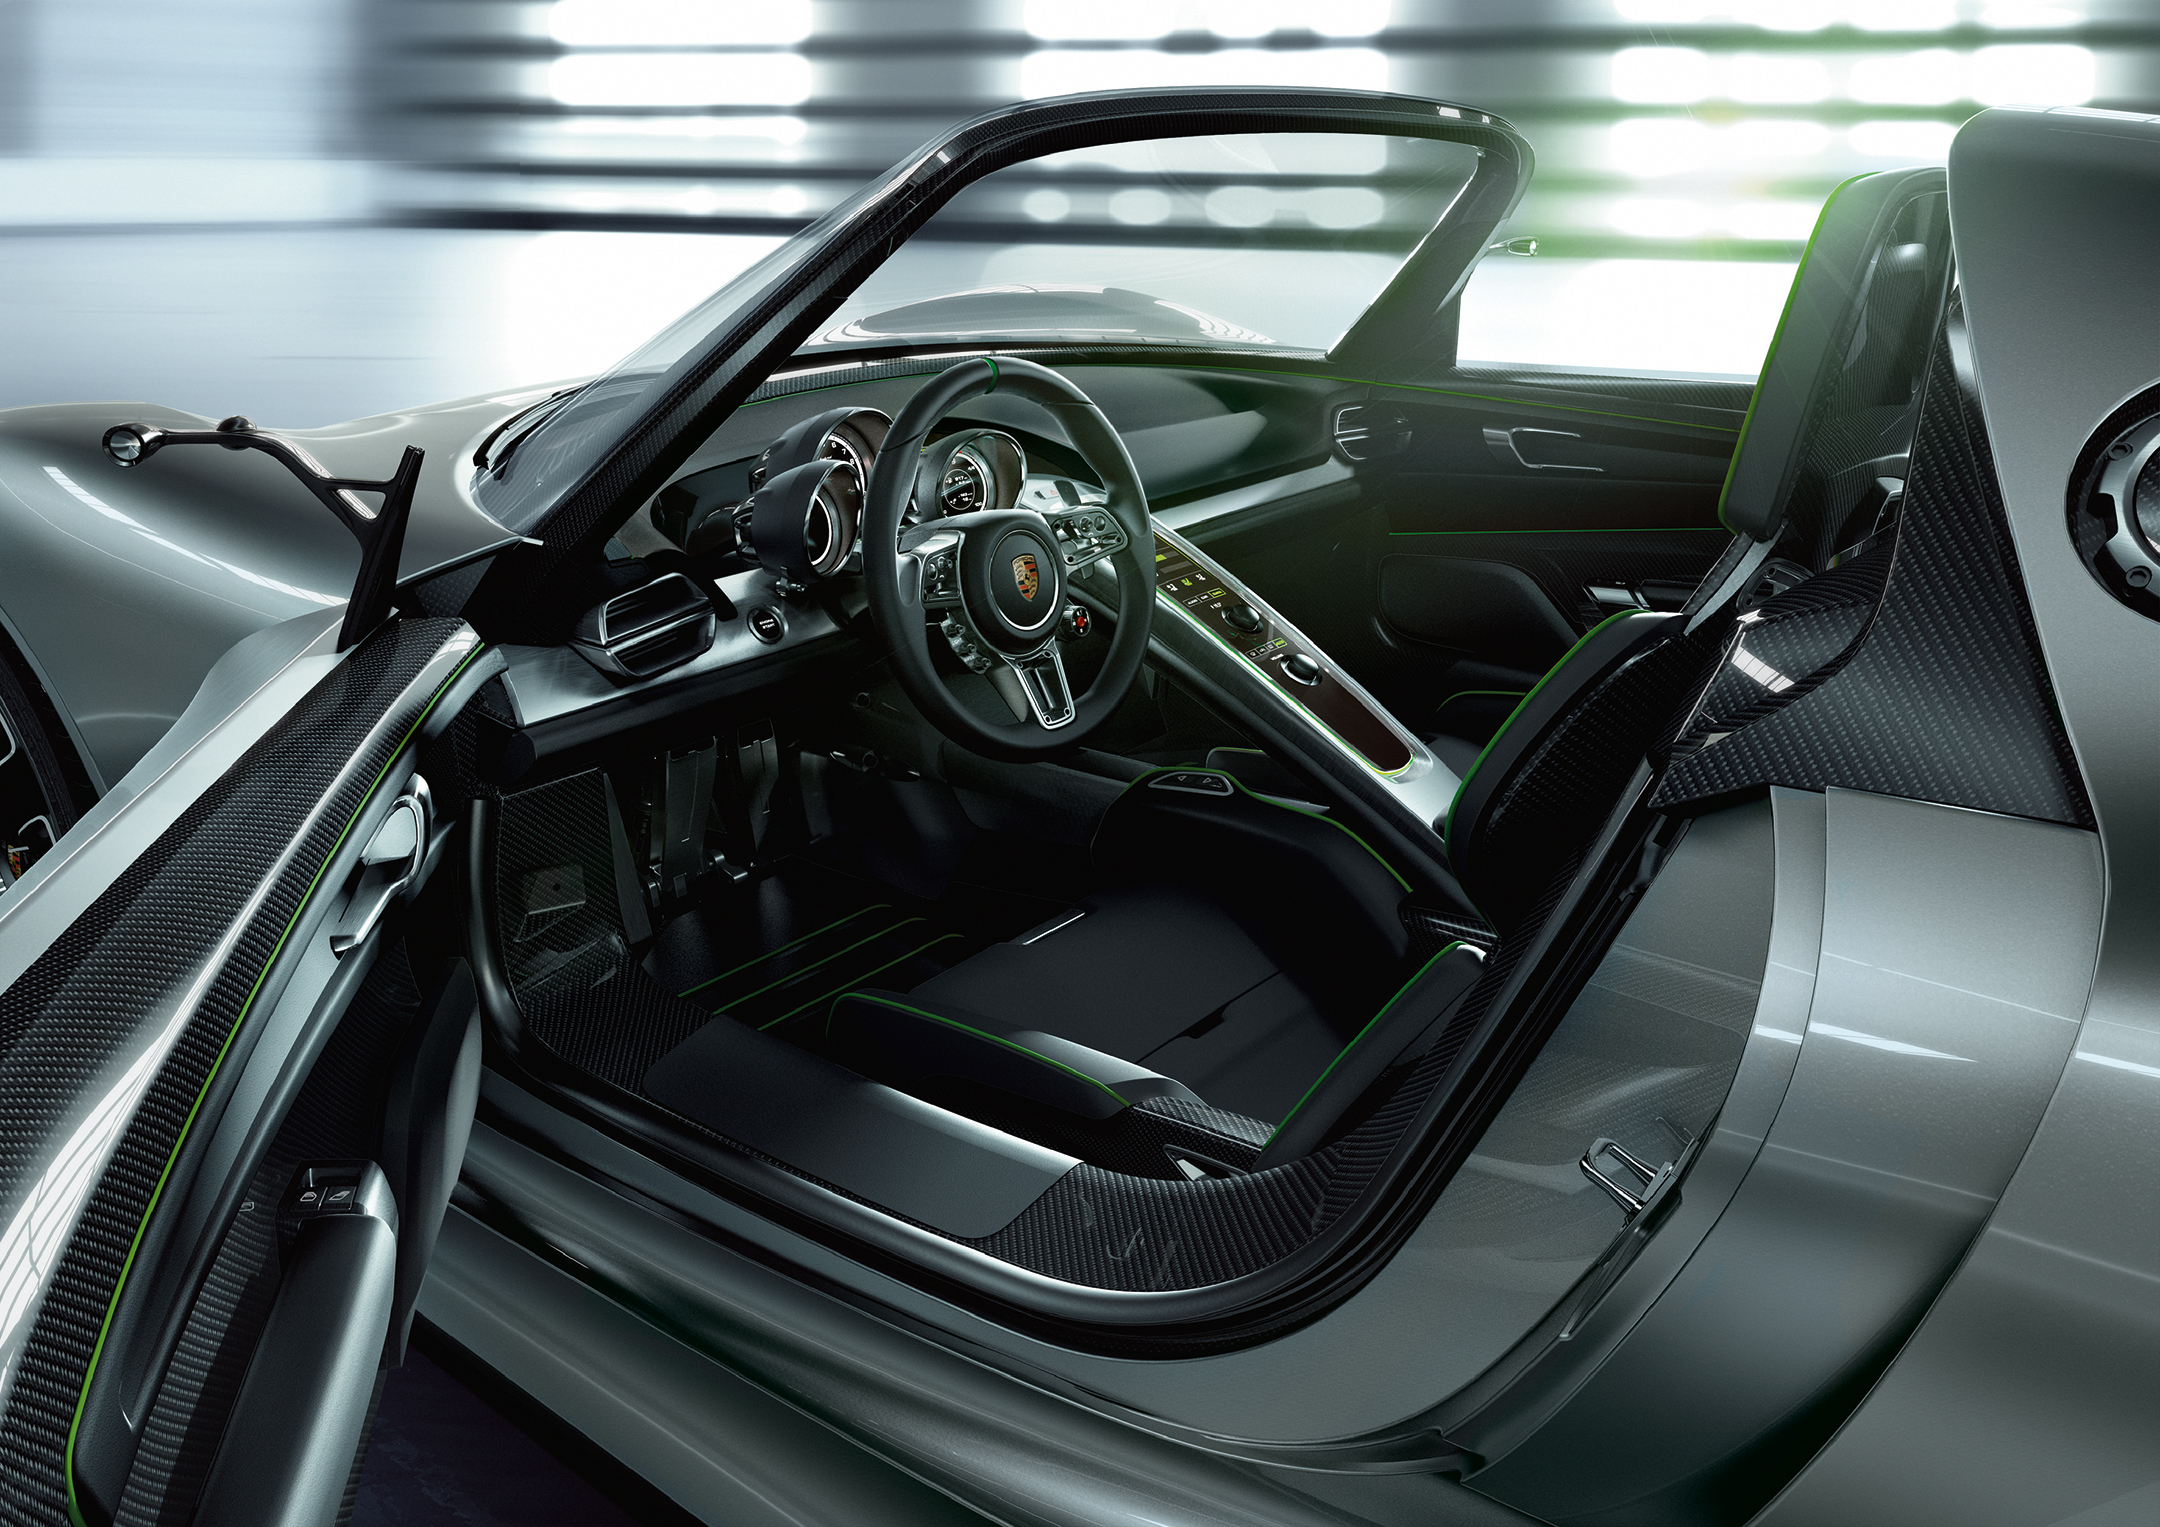 Ттд спайдер. Порше 918 Spyder. Porsche 918 Spyder Interior. Porshe 918 Spyder Concept. Porsche 918 Spyder салон.